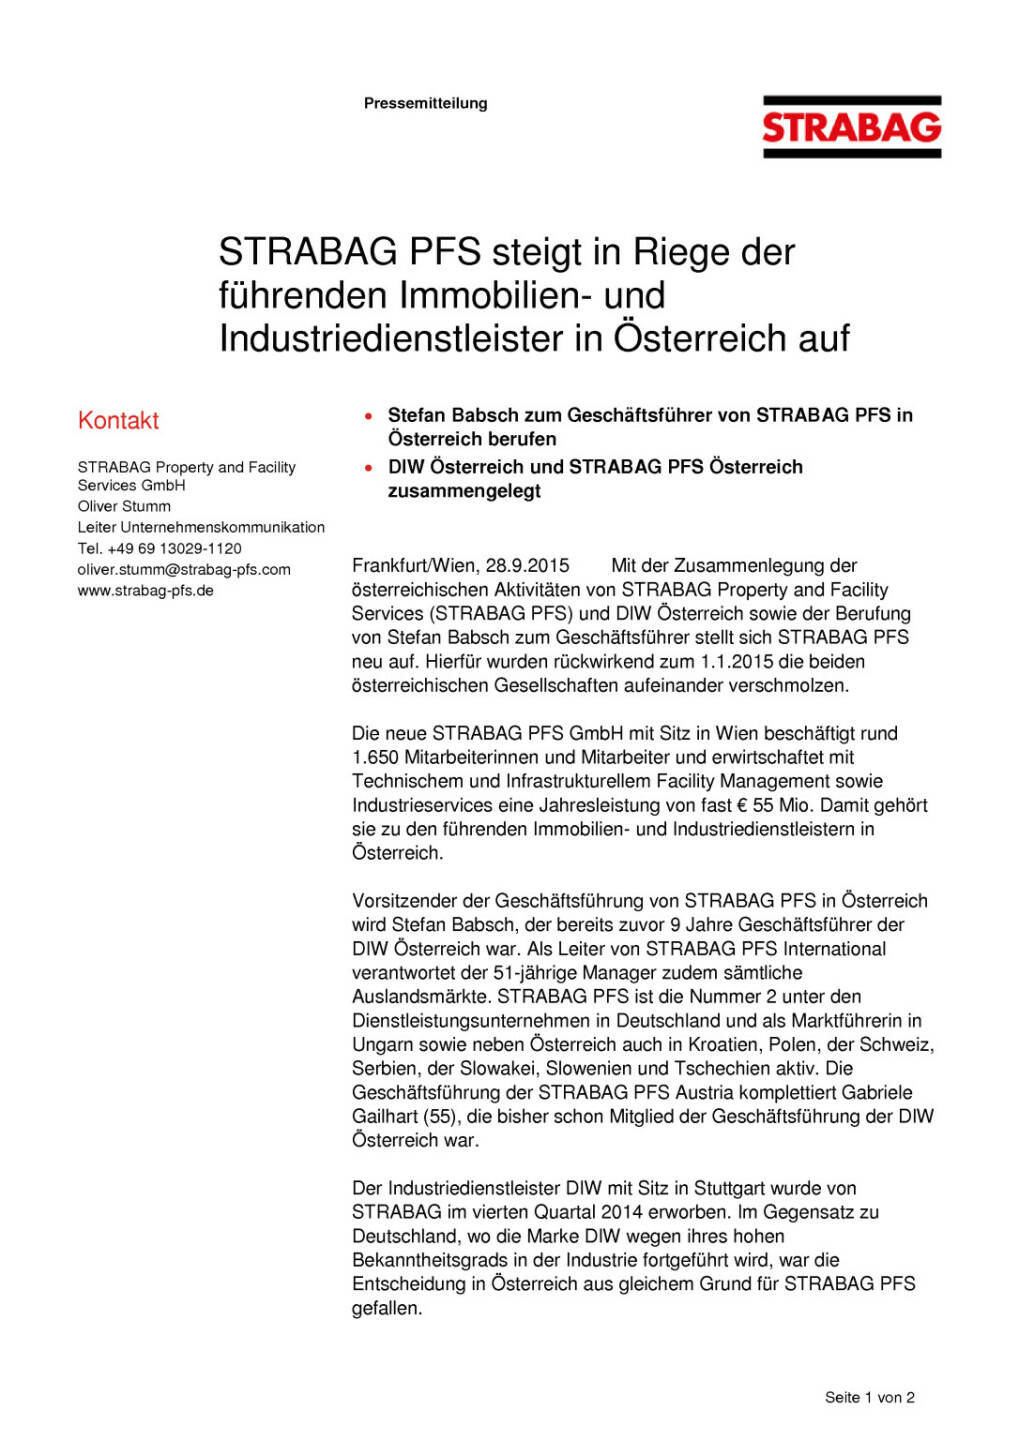 Strabag PFS steigt in Riege der führenden Immobilien- und Industriedienstleister in Österreich auf, Seite 1/2, komplettes Dokument unter http://boerse-social.com/static/uploads/file_387_strabag_pfs_steigt_in_riege_der_fuhrenden_immobilien-_und_industriedienstleister_in_osterreich_auf.pdf